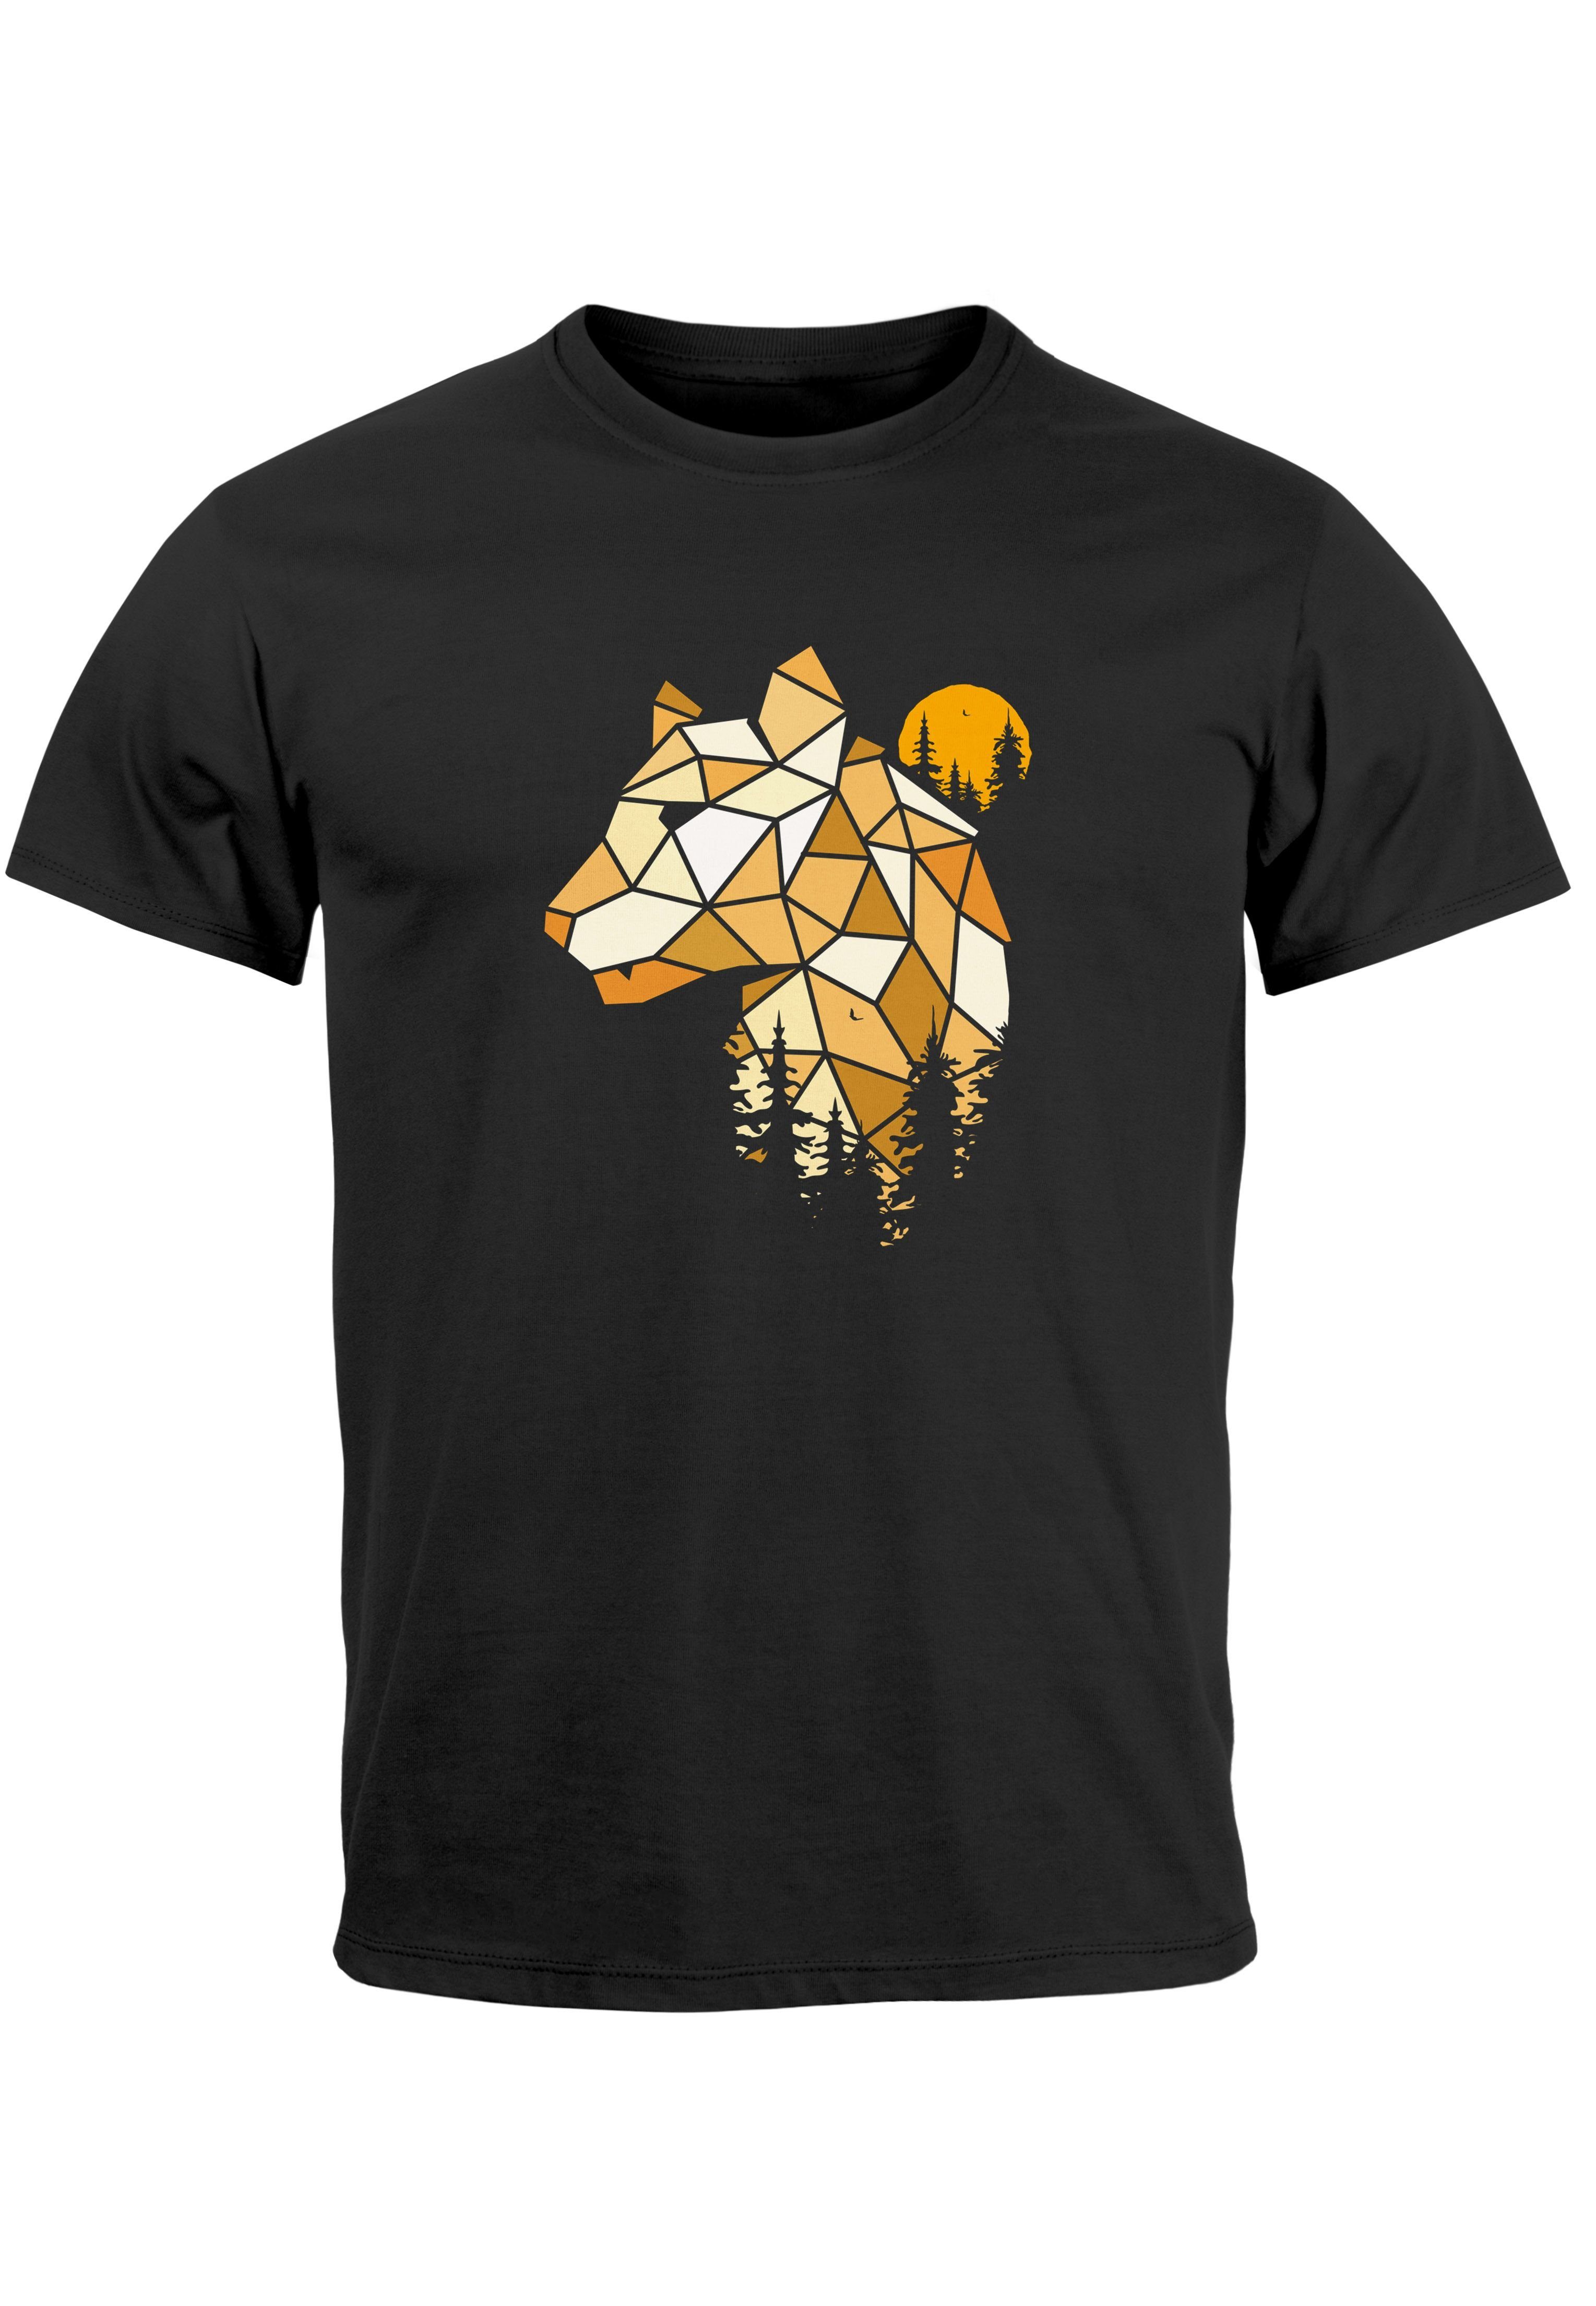 Outdoor Wald Motiv T-Shirt Print Print Print-Shirt mit Neverless Au Luchs Tiere Polygon Fashion schwarz Herren